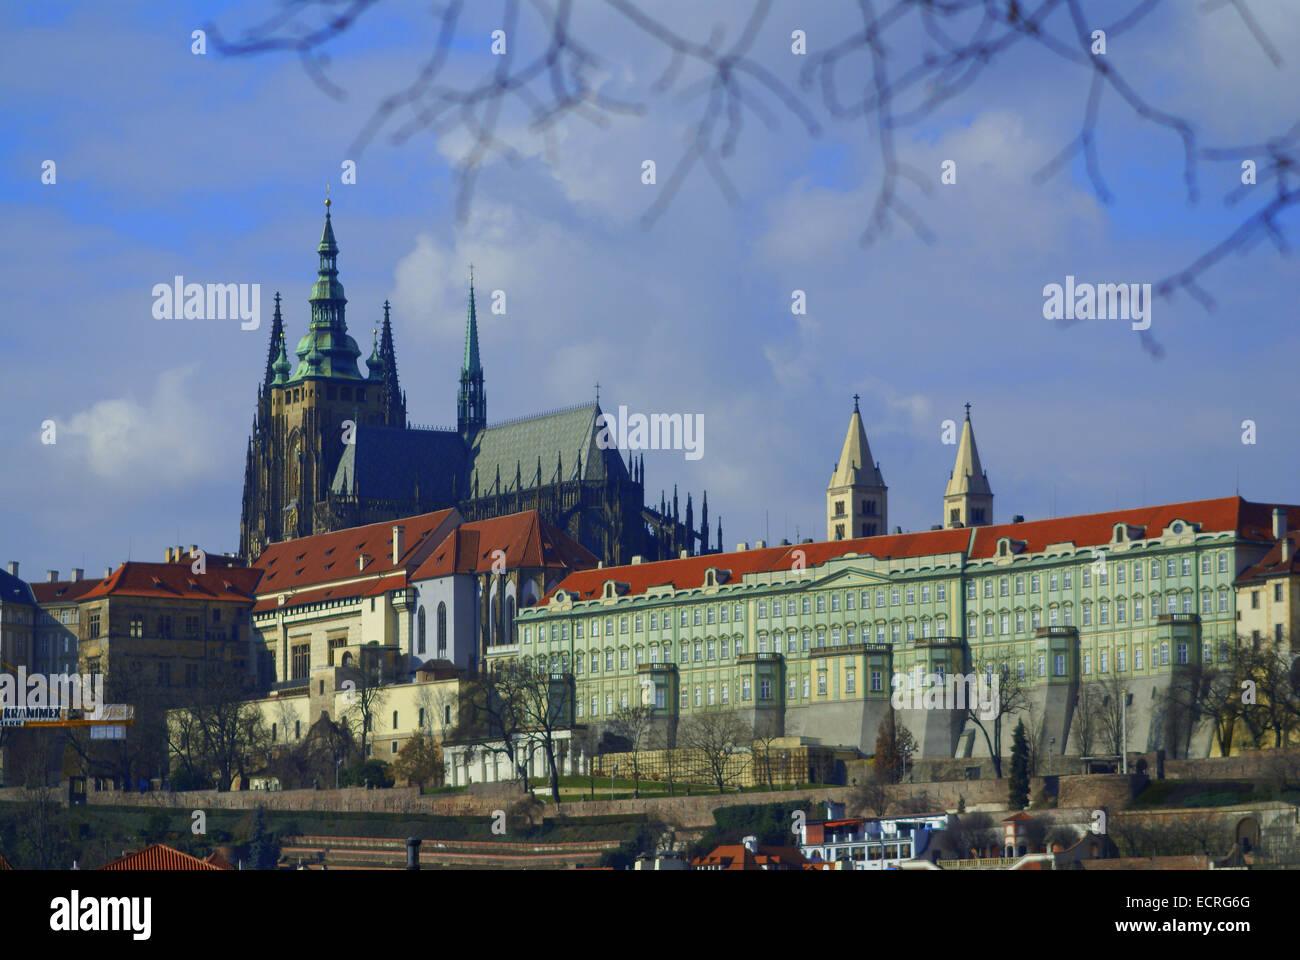 Prague est la capitale et la plus grande ville de la République tchèque. Particulièrement élégants bâtiments, toits, carrelage en terre cuite Banque D'Images